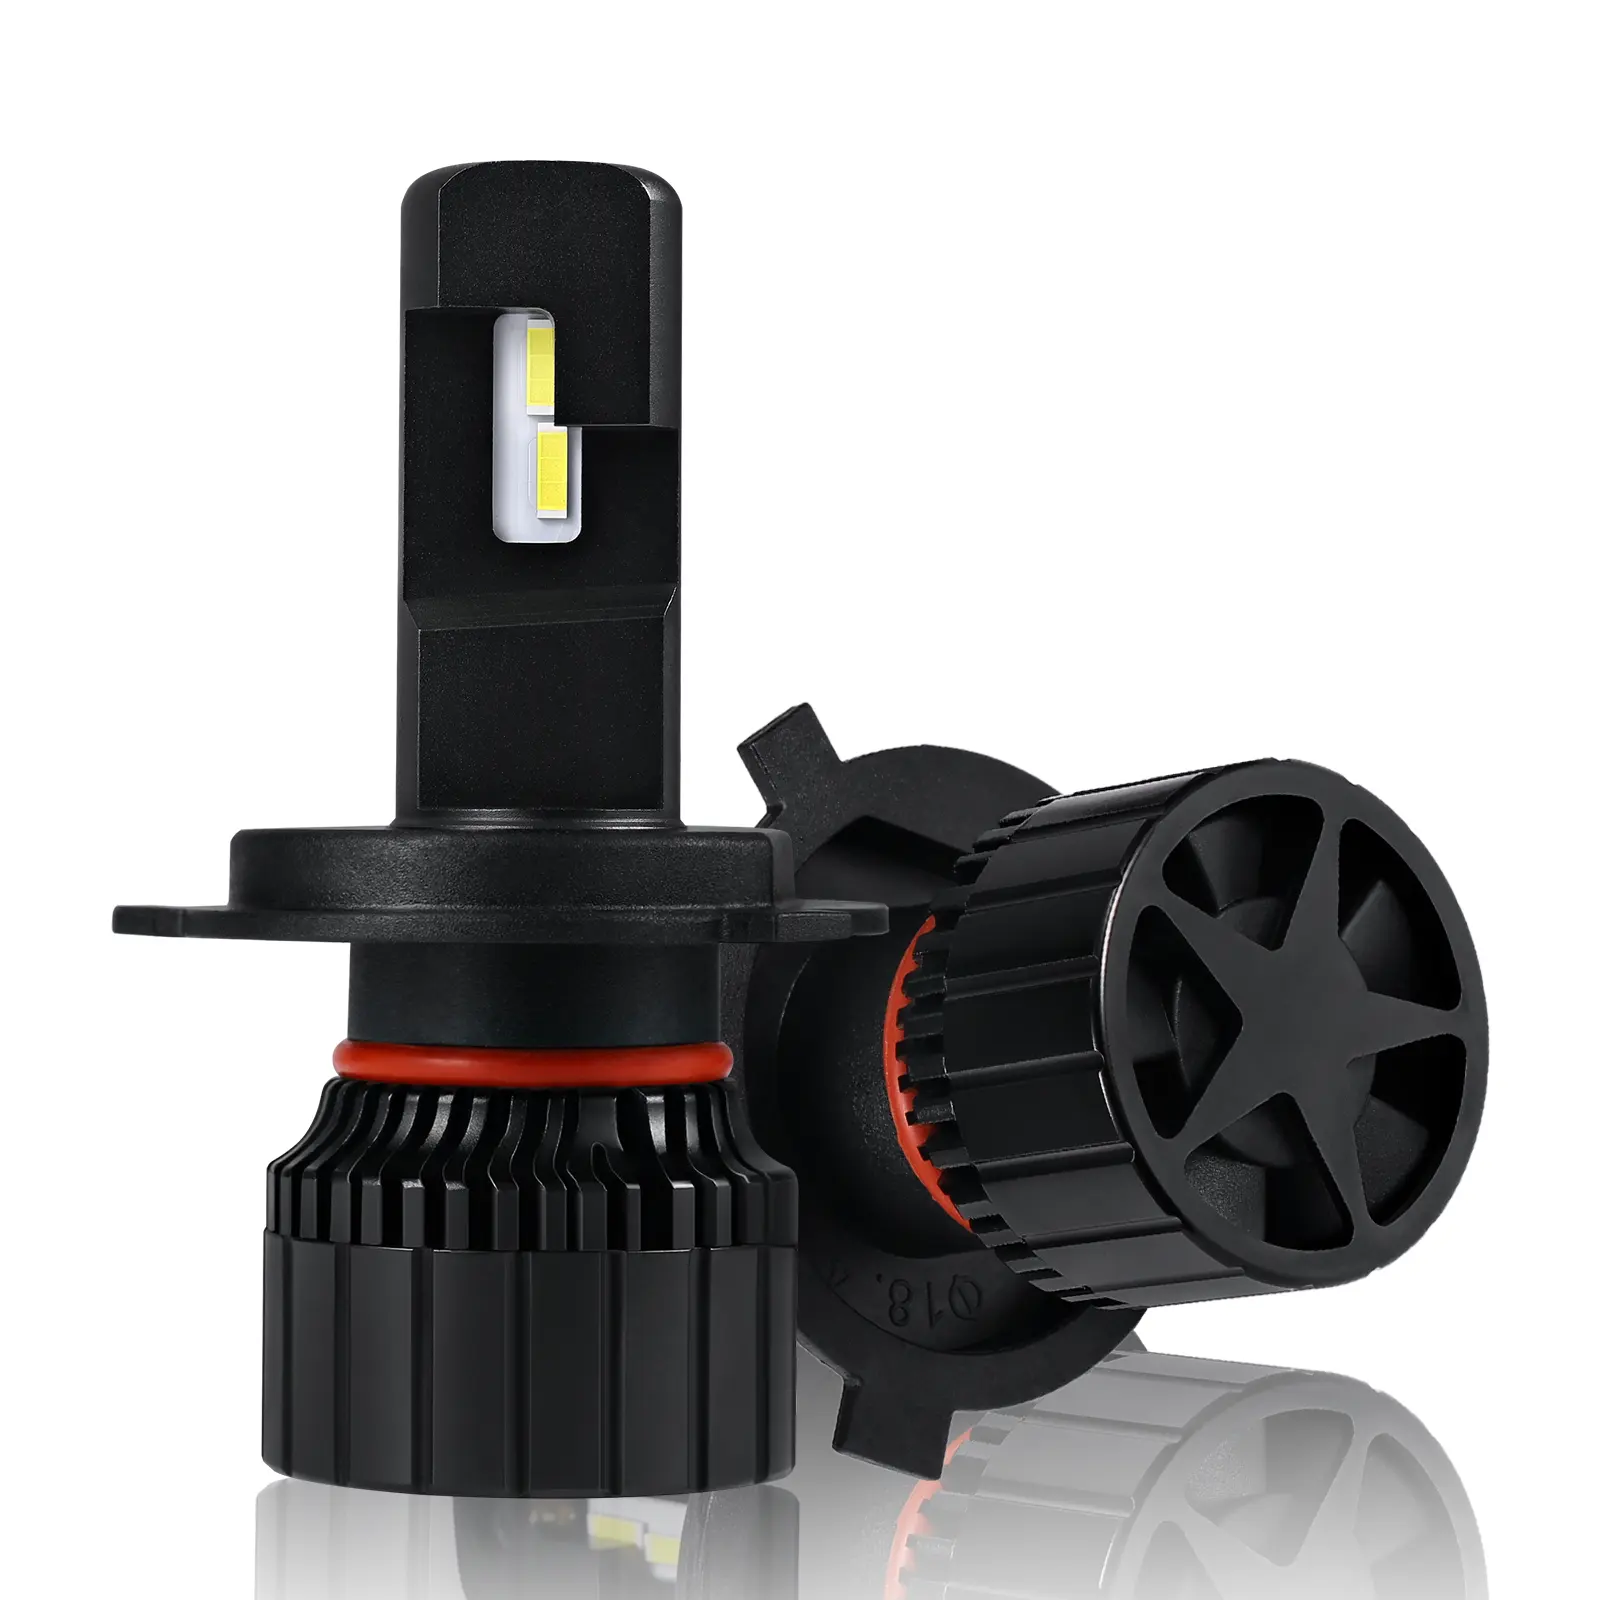 Tự động công suất cao K8 loạt tốt nhất dự ống kính H7 H1 H4 H11 H9 9006 9012 Moto H3 Led Đèn Pha H4